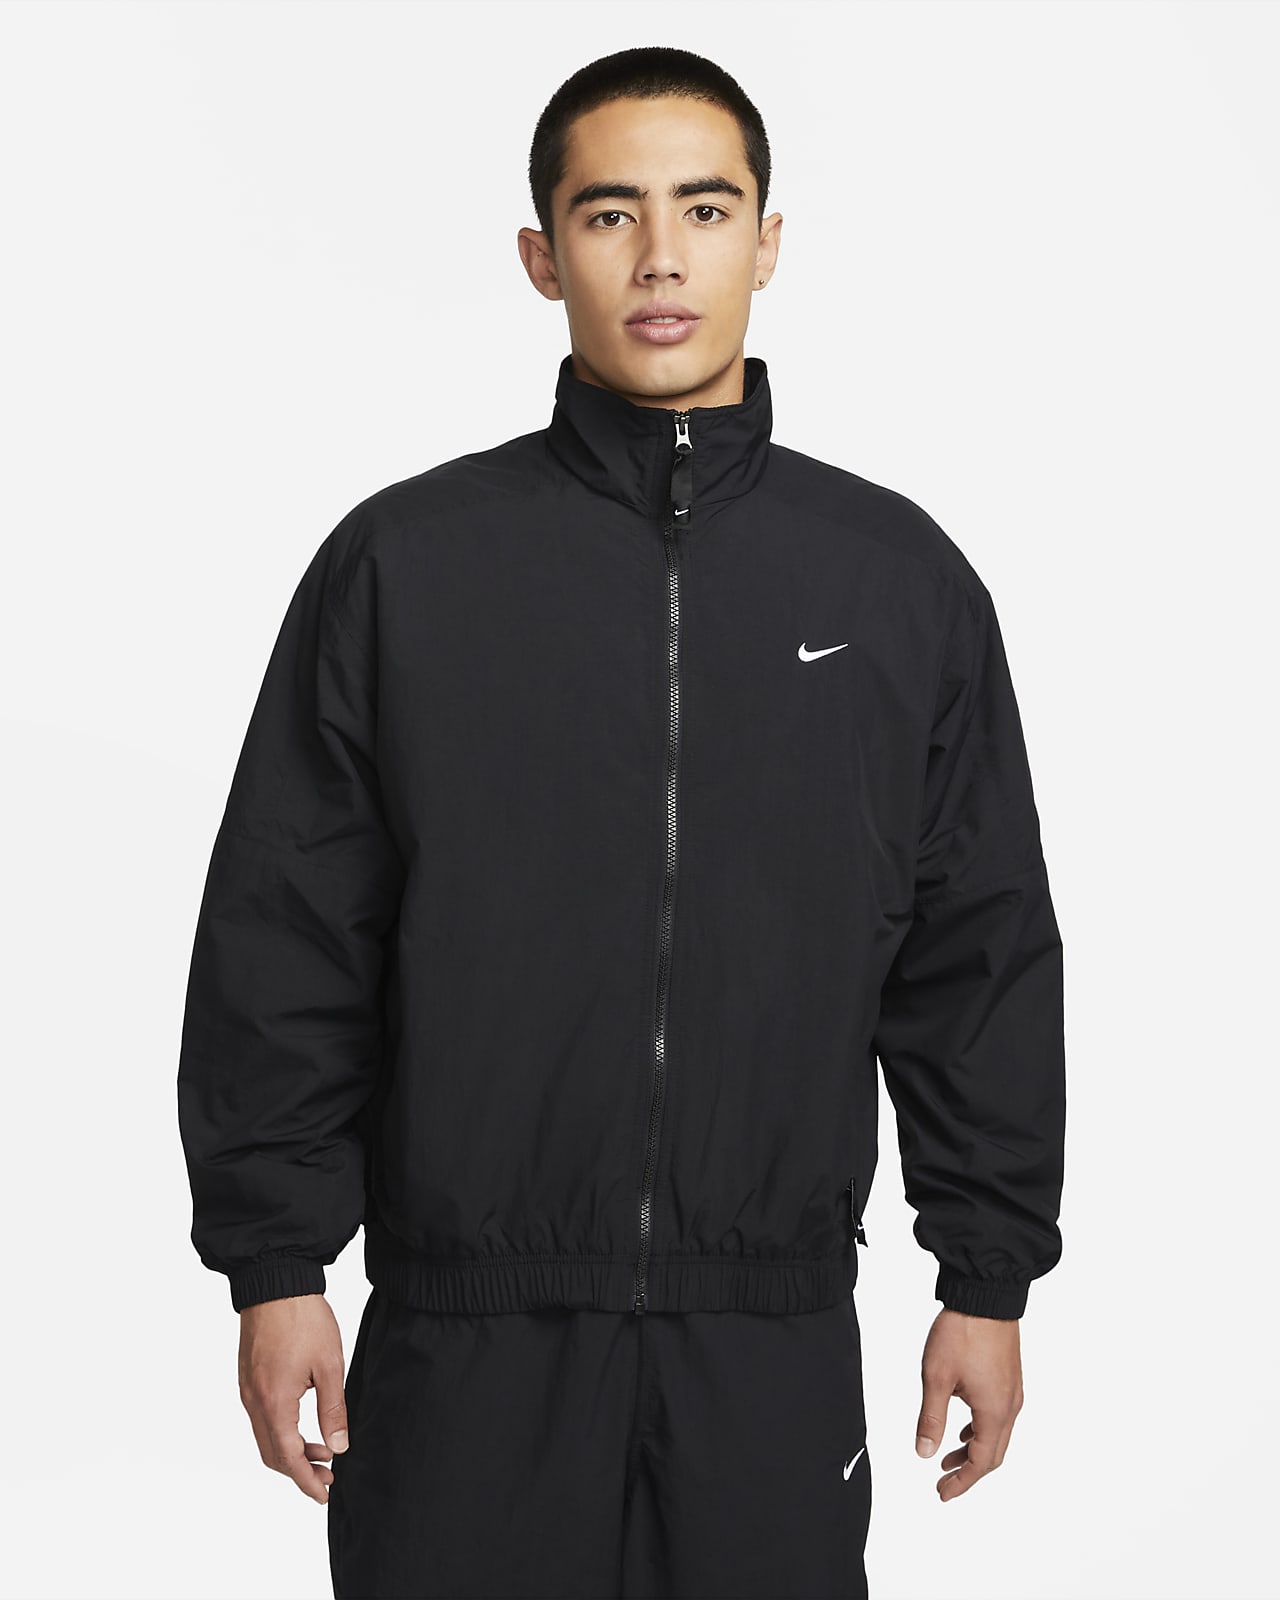 Afslachten bladzijde geluid Nike Sportswear Solo Swoosh Men's Tracksuit Jacket. Nike ID